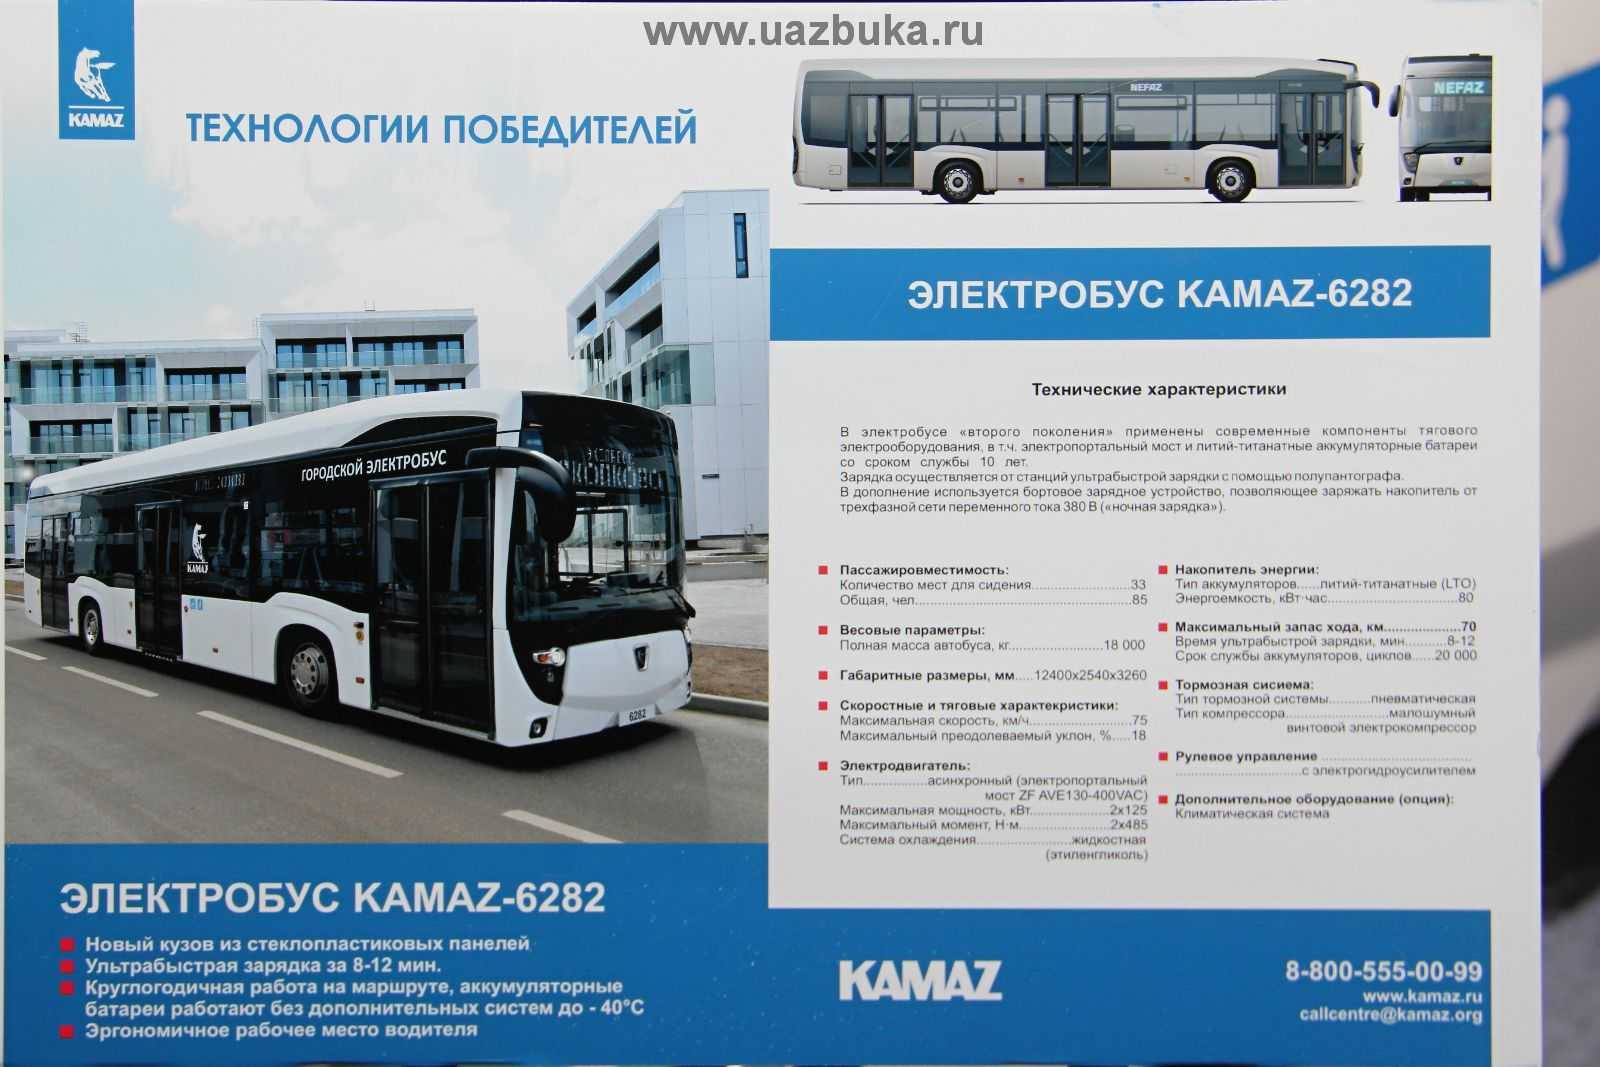 Расписание 15 электробуса. ЛИАЗ-6274 чертежи электробус. Электробус КАМАЗ-6282. Электробус КАМАЗ характеристики технические. Электробус КАМАЗ-6282 схема.